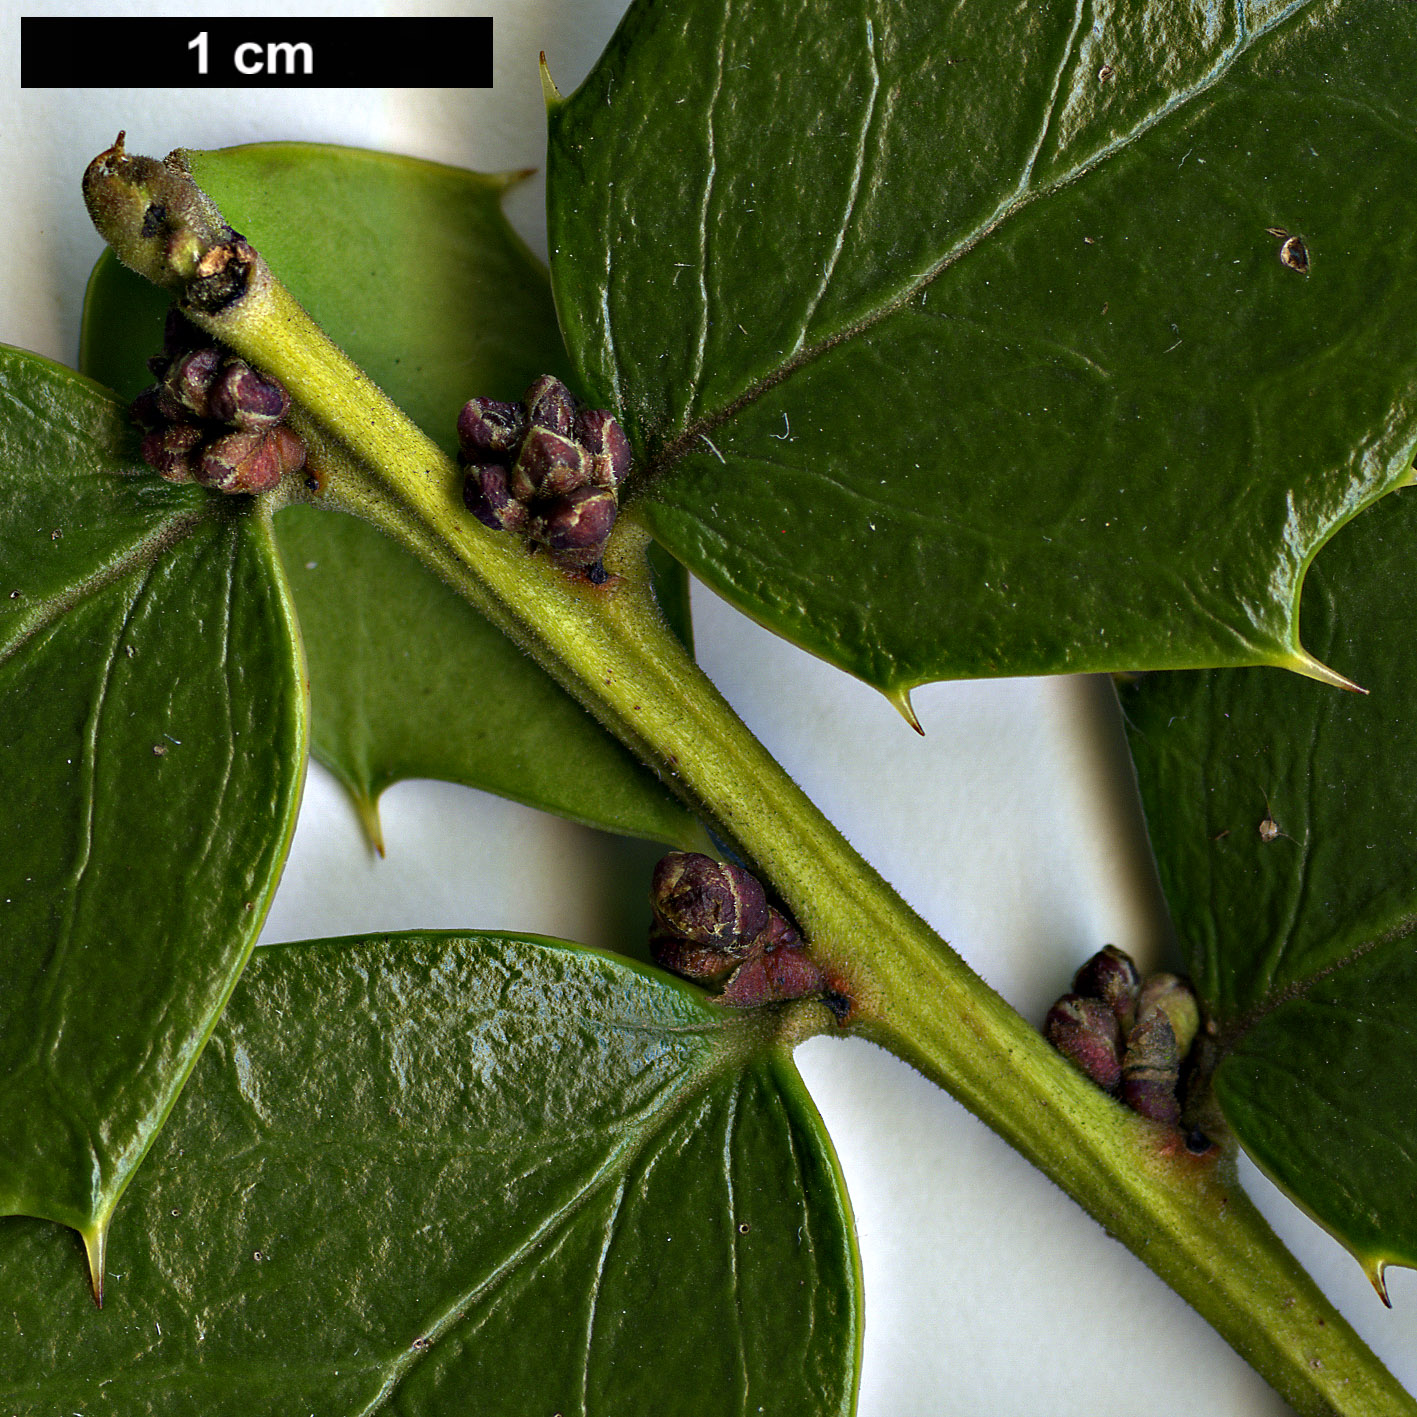 High resolution image: Family: Aquifoliaceae - Genus: Ilex - Taxon: bioritsensis